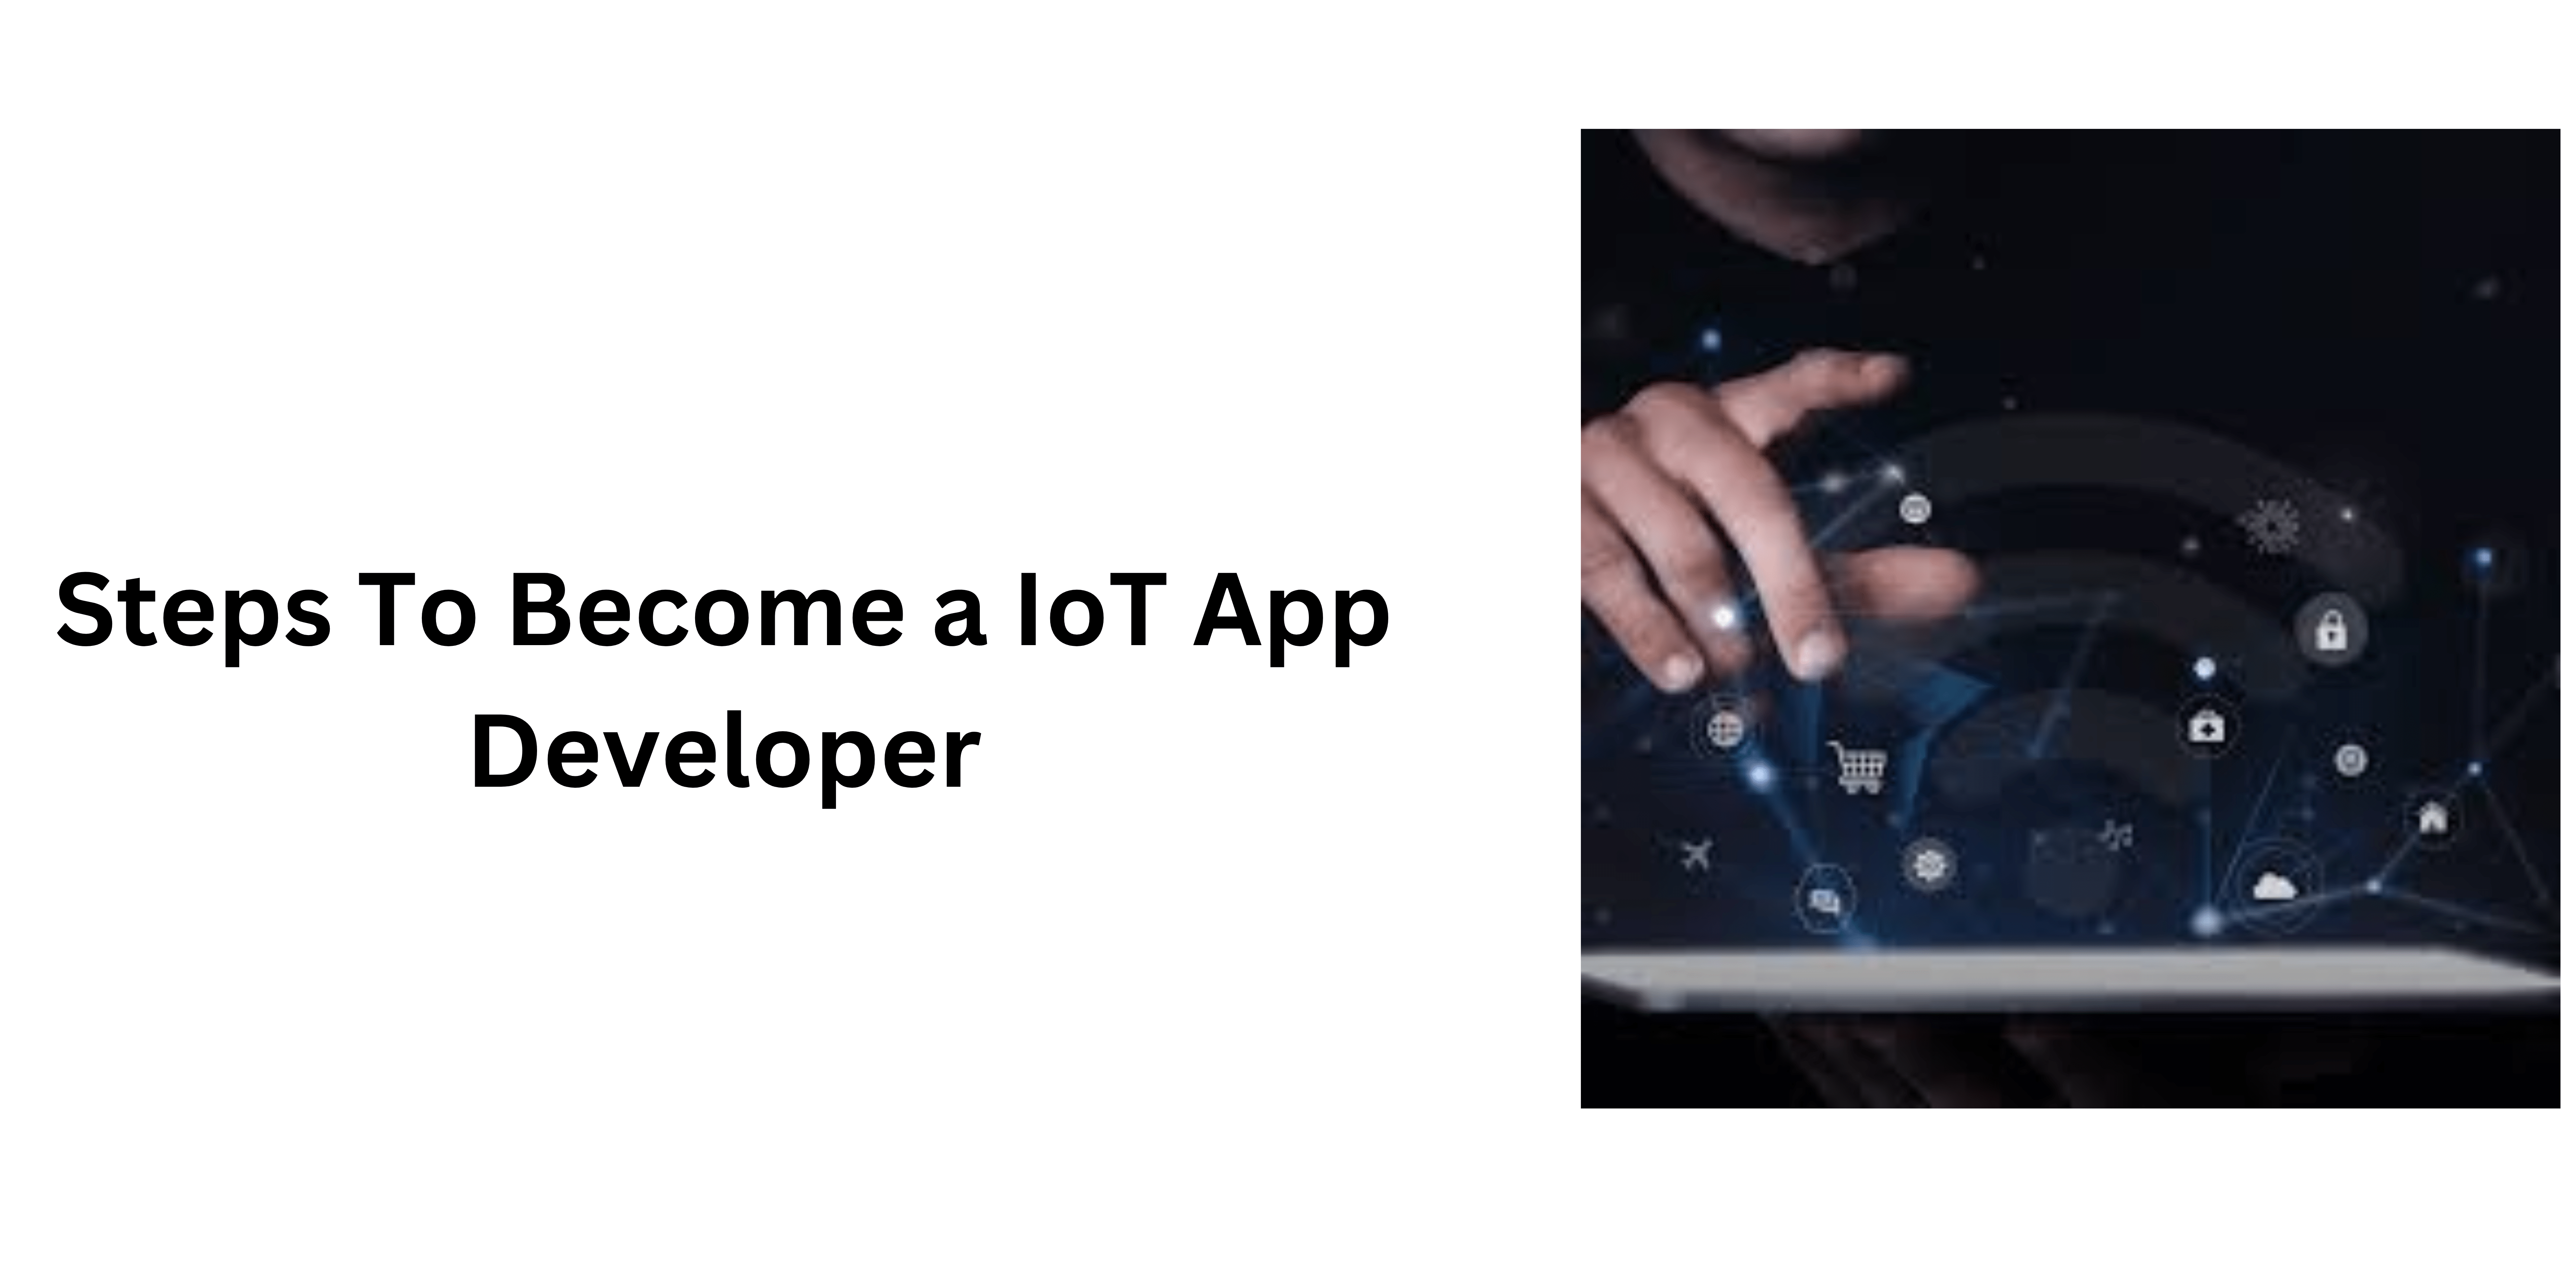 IoT App Developer